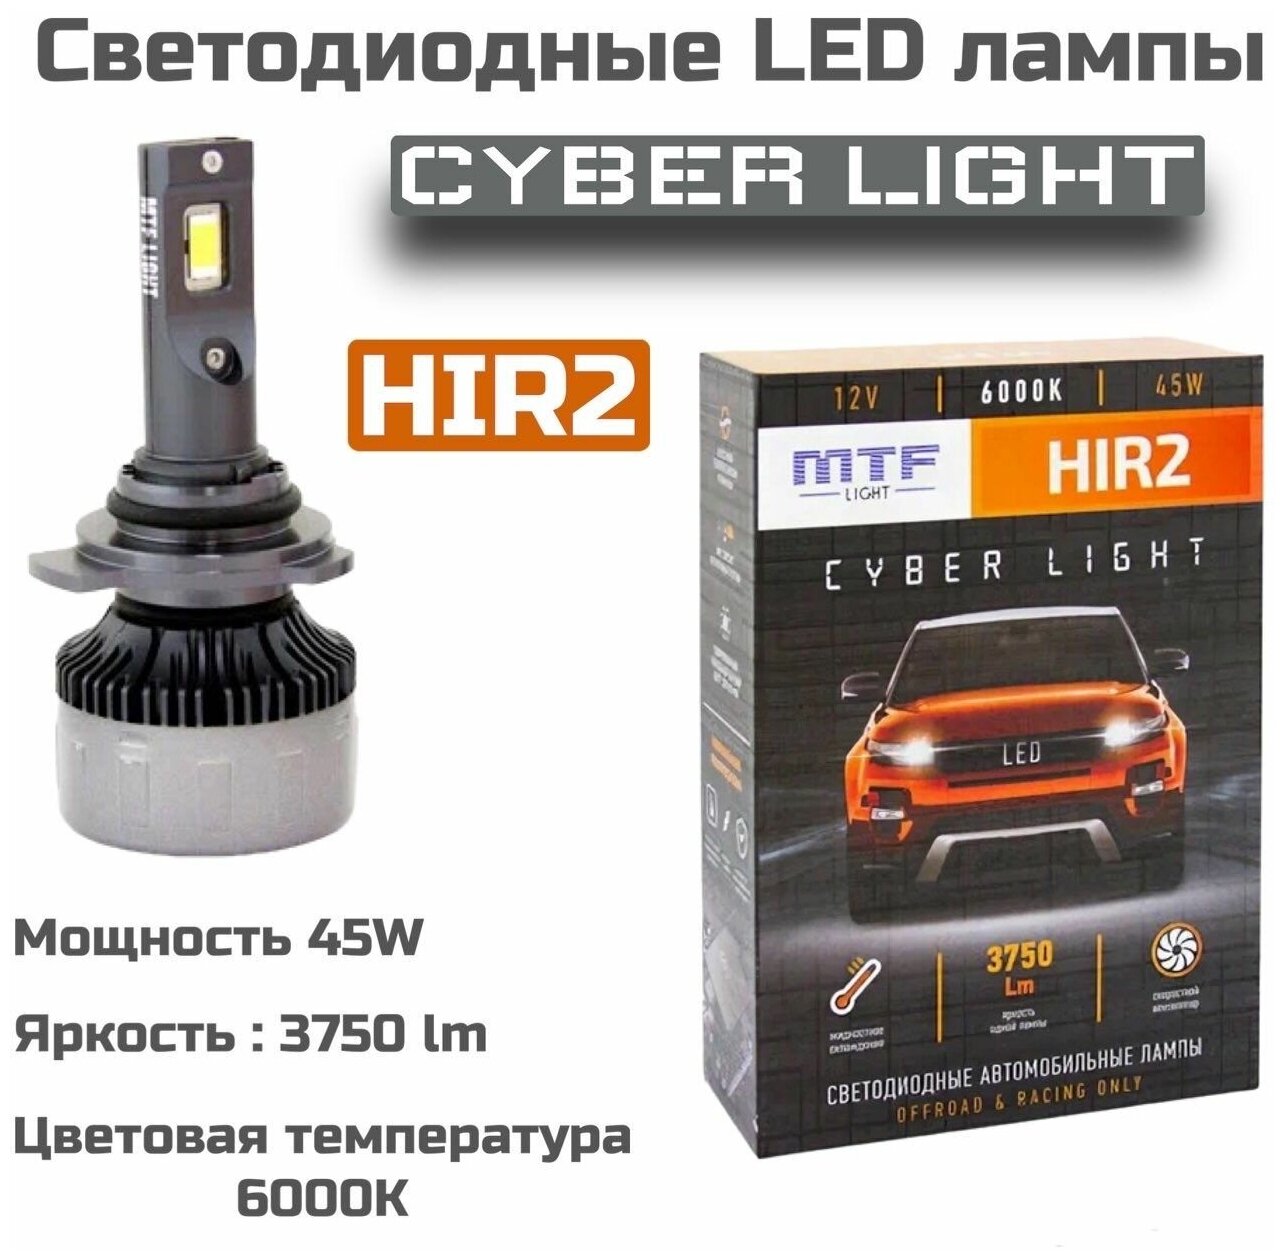 Светодиодные автомобильные лампы MTF Light Cyber light HIR2 6000K 12V